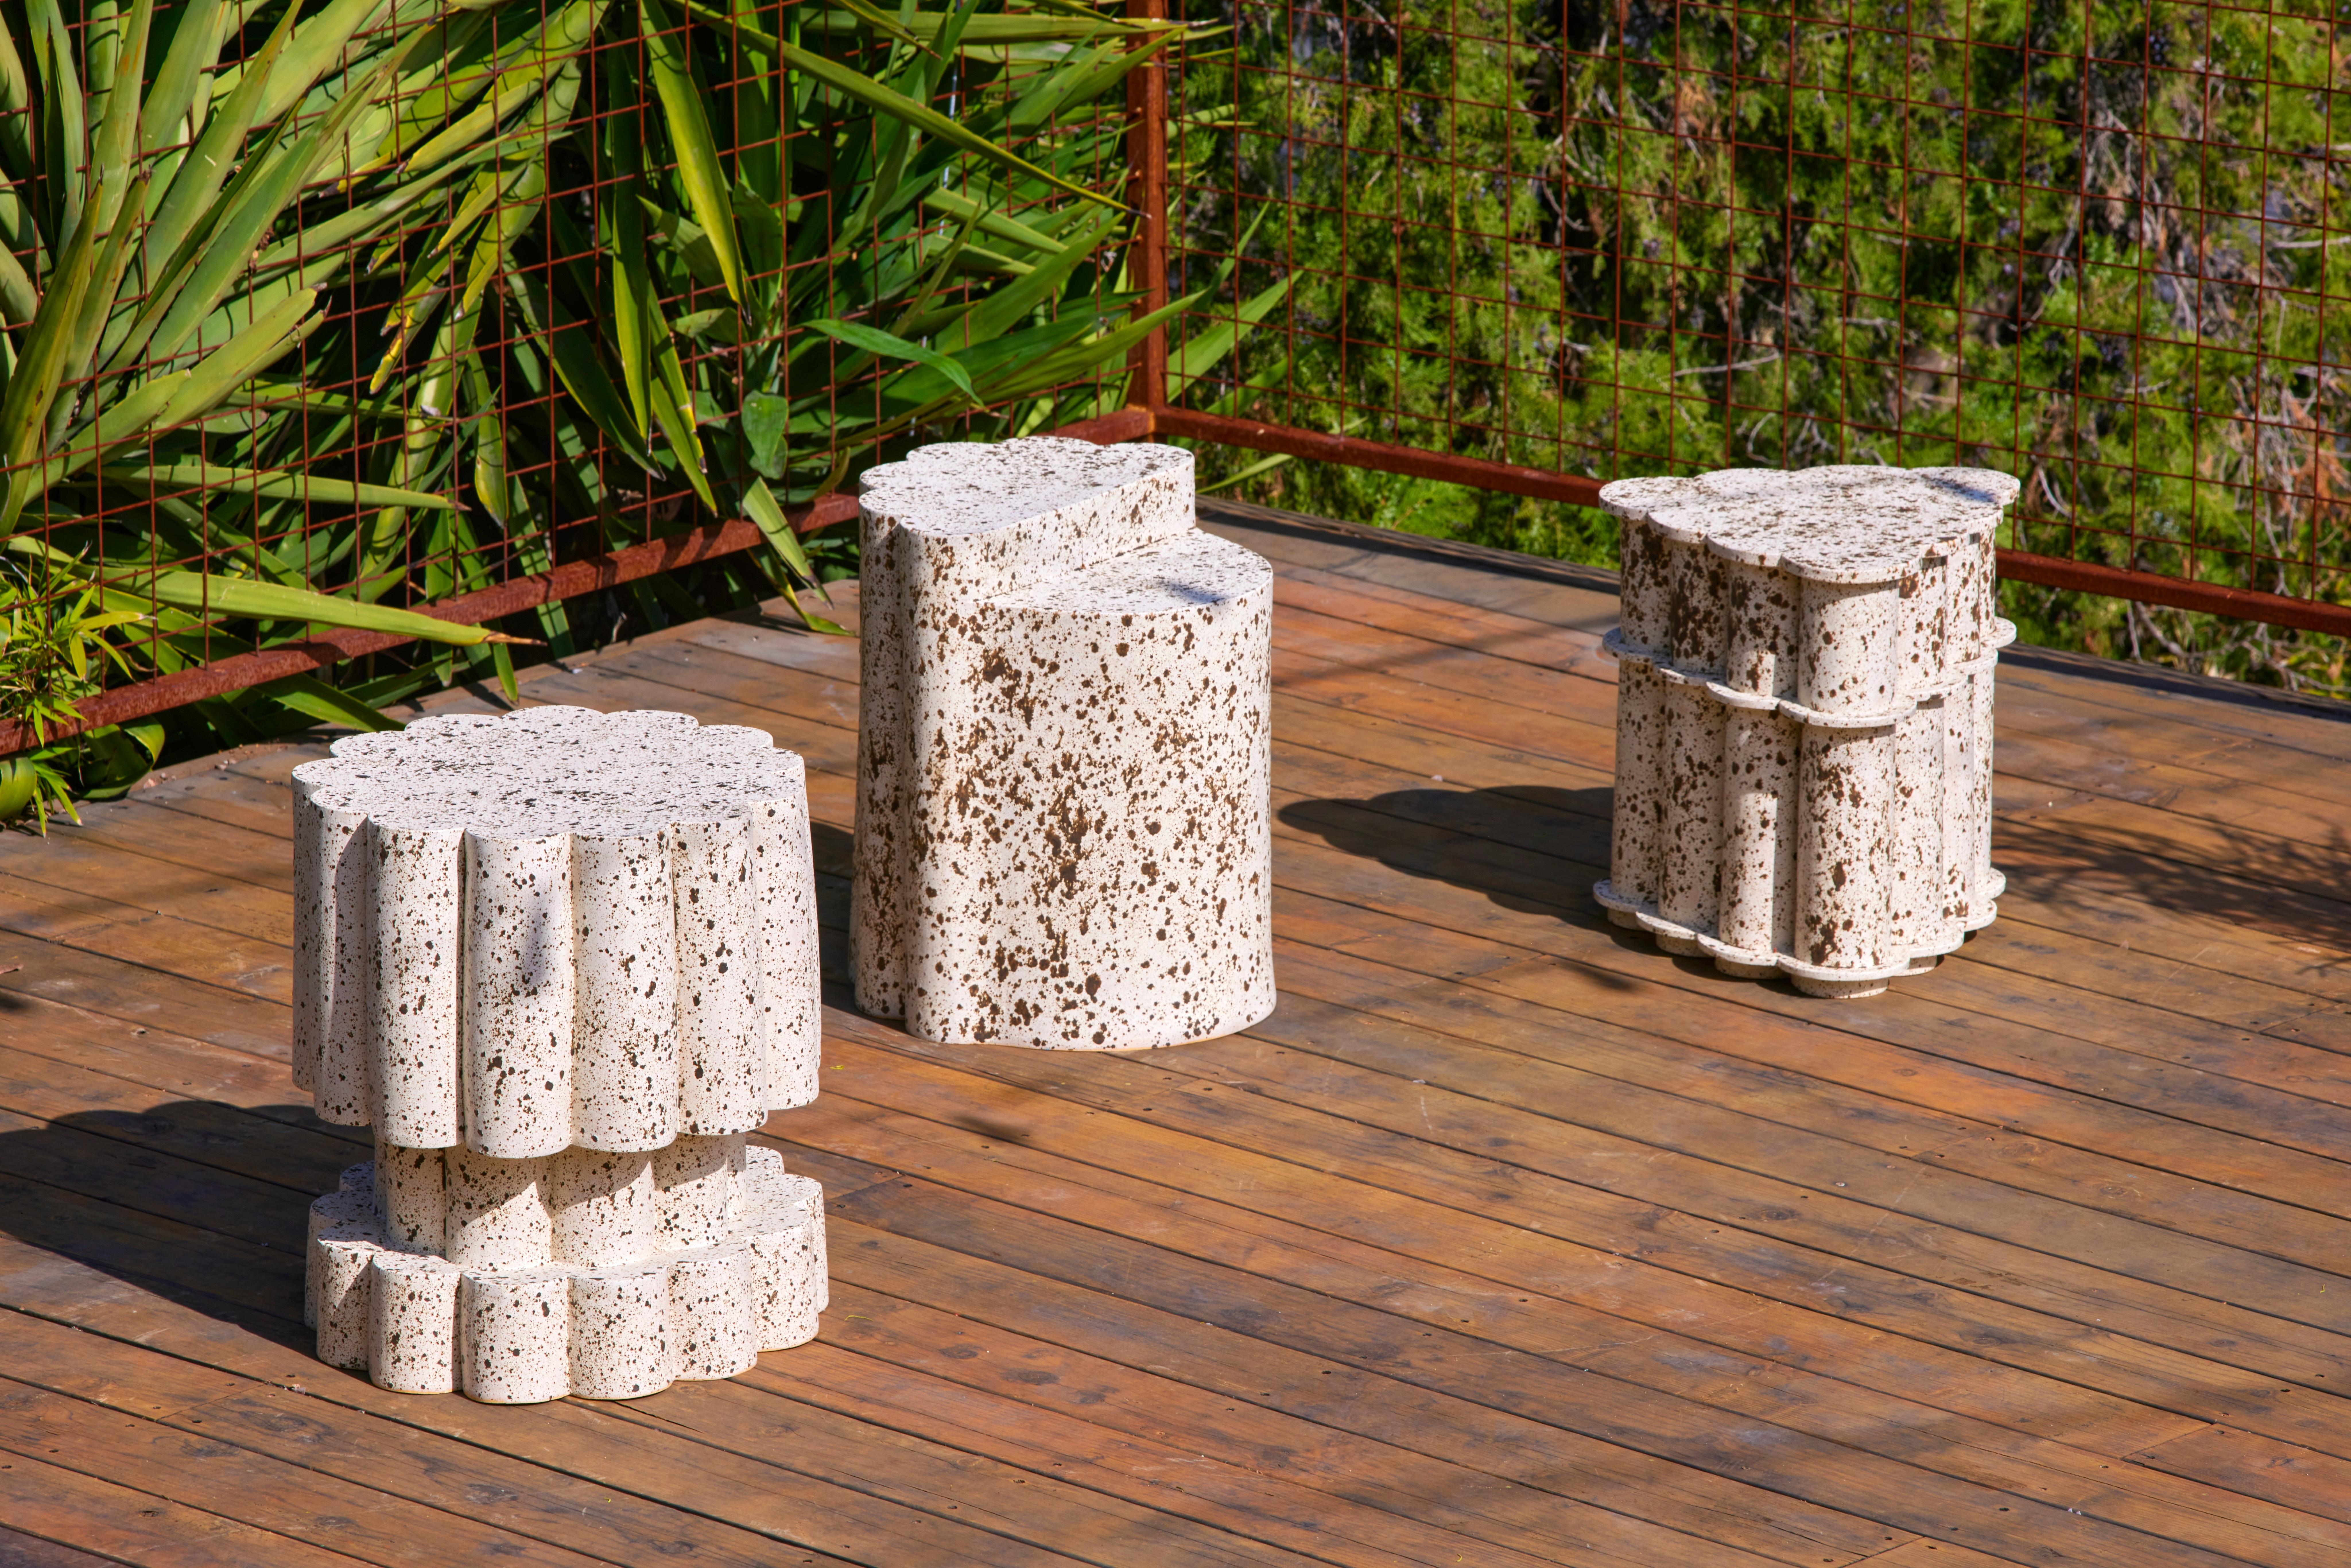 Ceramic XS Triple Tier Cloud Beistelltisch & Hocker in Birke. Auf Bestellung gefertigt. 

BZIPPY-Keramikprodukte sind Unikate aus Steinzeug / Steingut, darunter Möbel, Pflanzgefäße und Wohnaccessoires. 

Jedes Stück wird in unserem Werk in Los